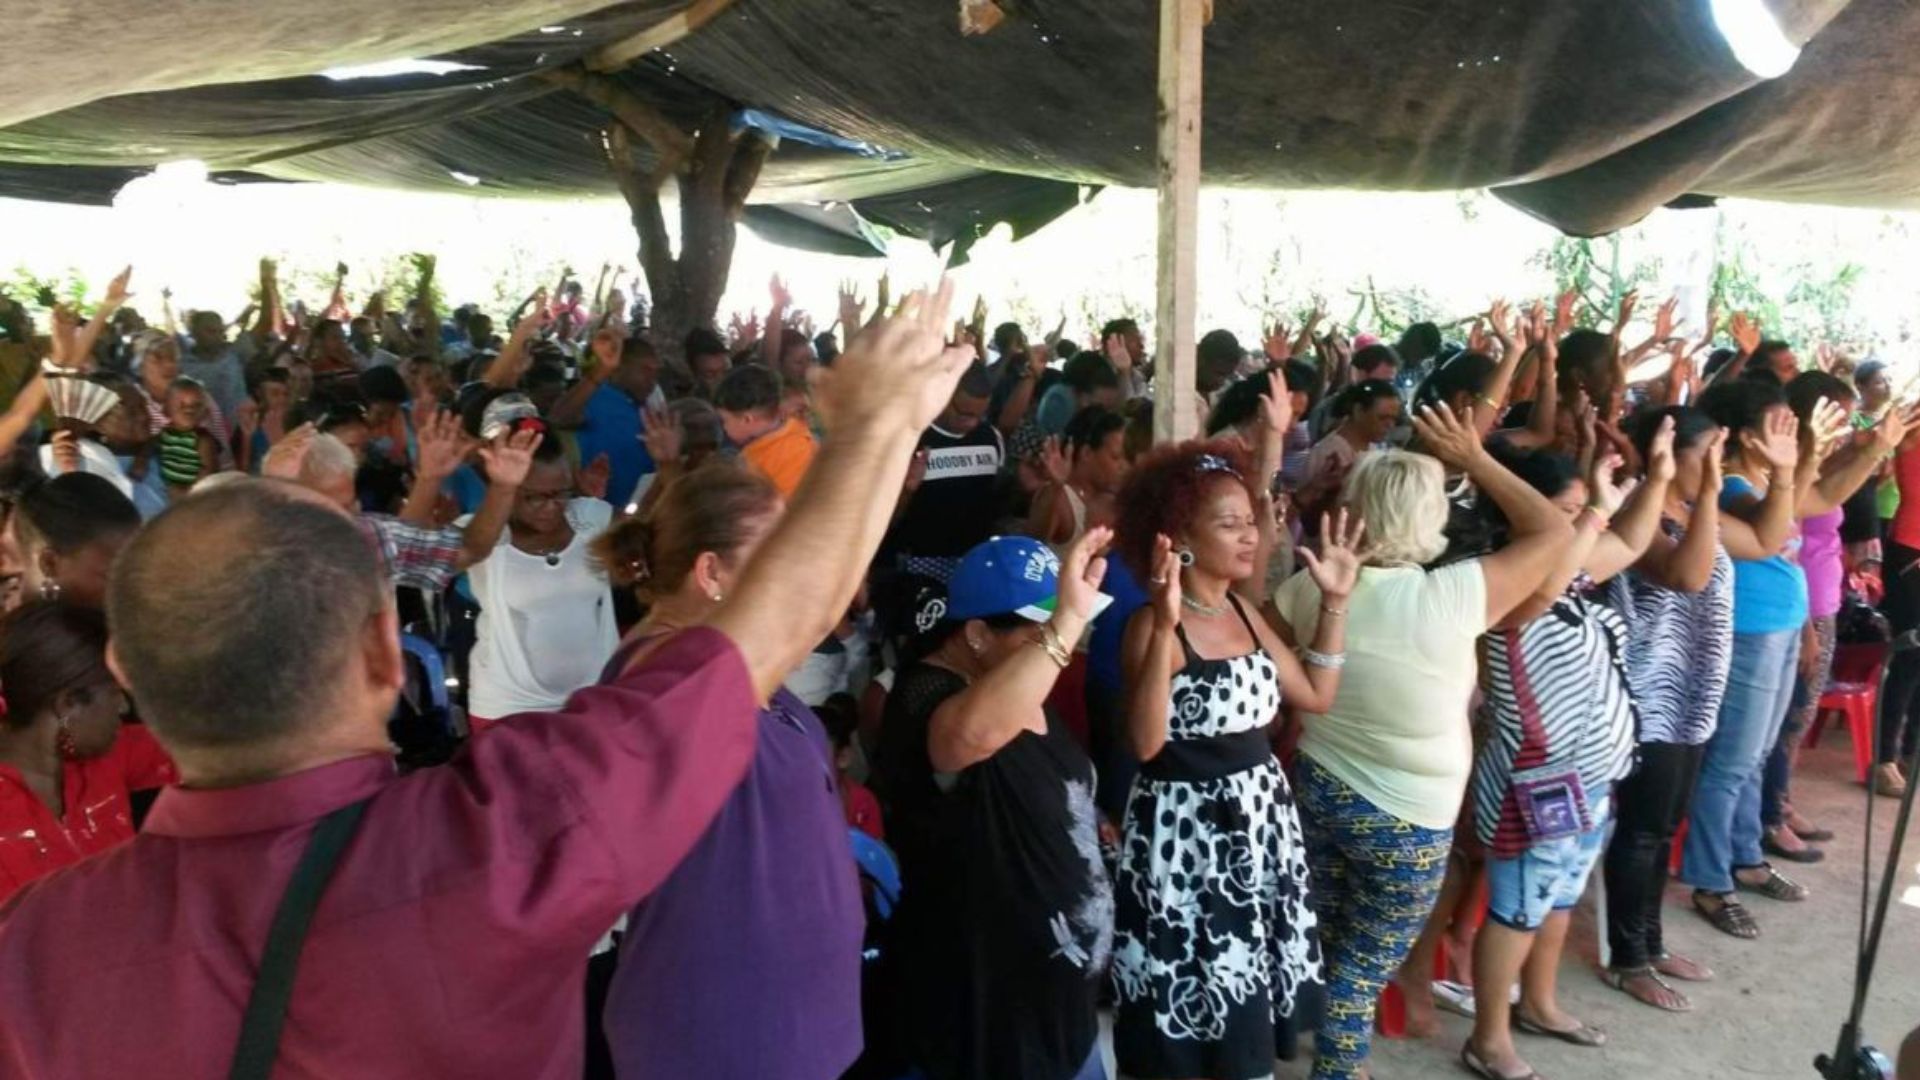 La encuesta del OCDH concluye que en Cuba no se respetan ni garantizan las libertades religiosas de manera plena